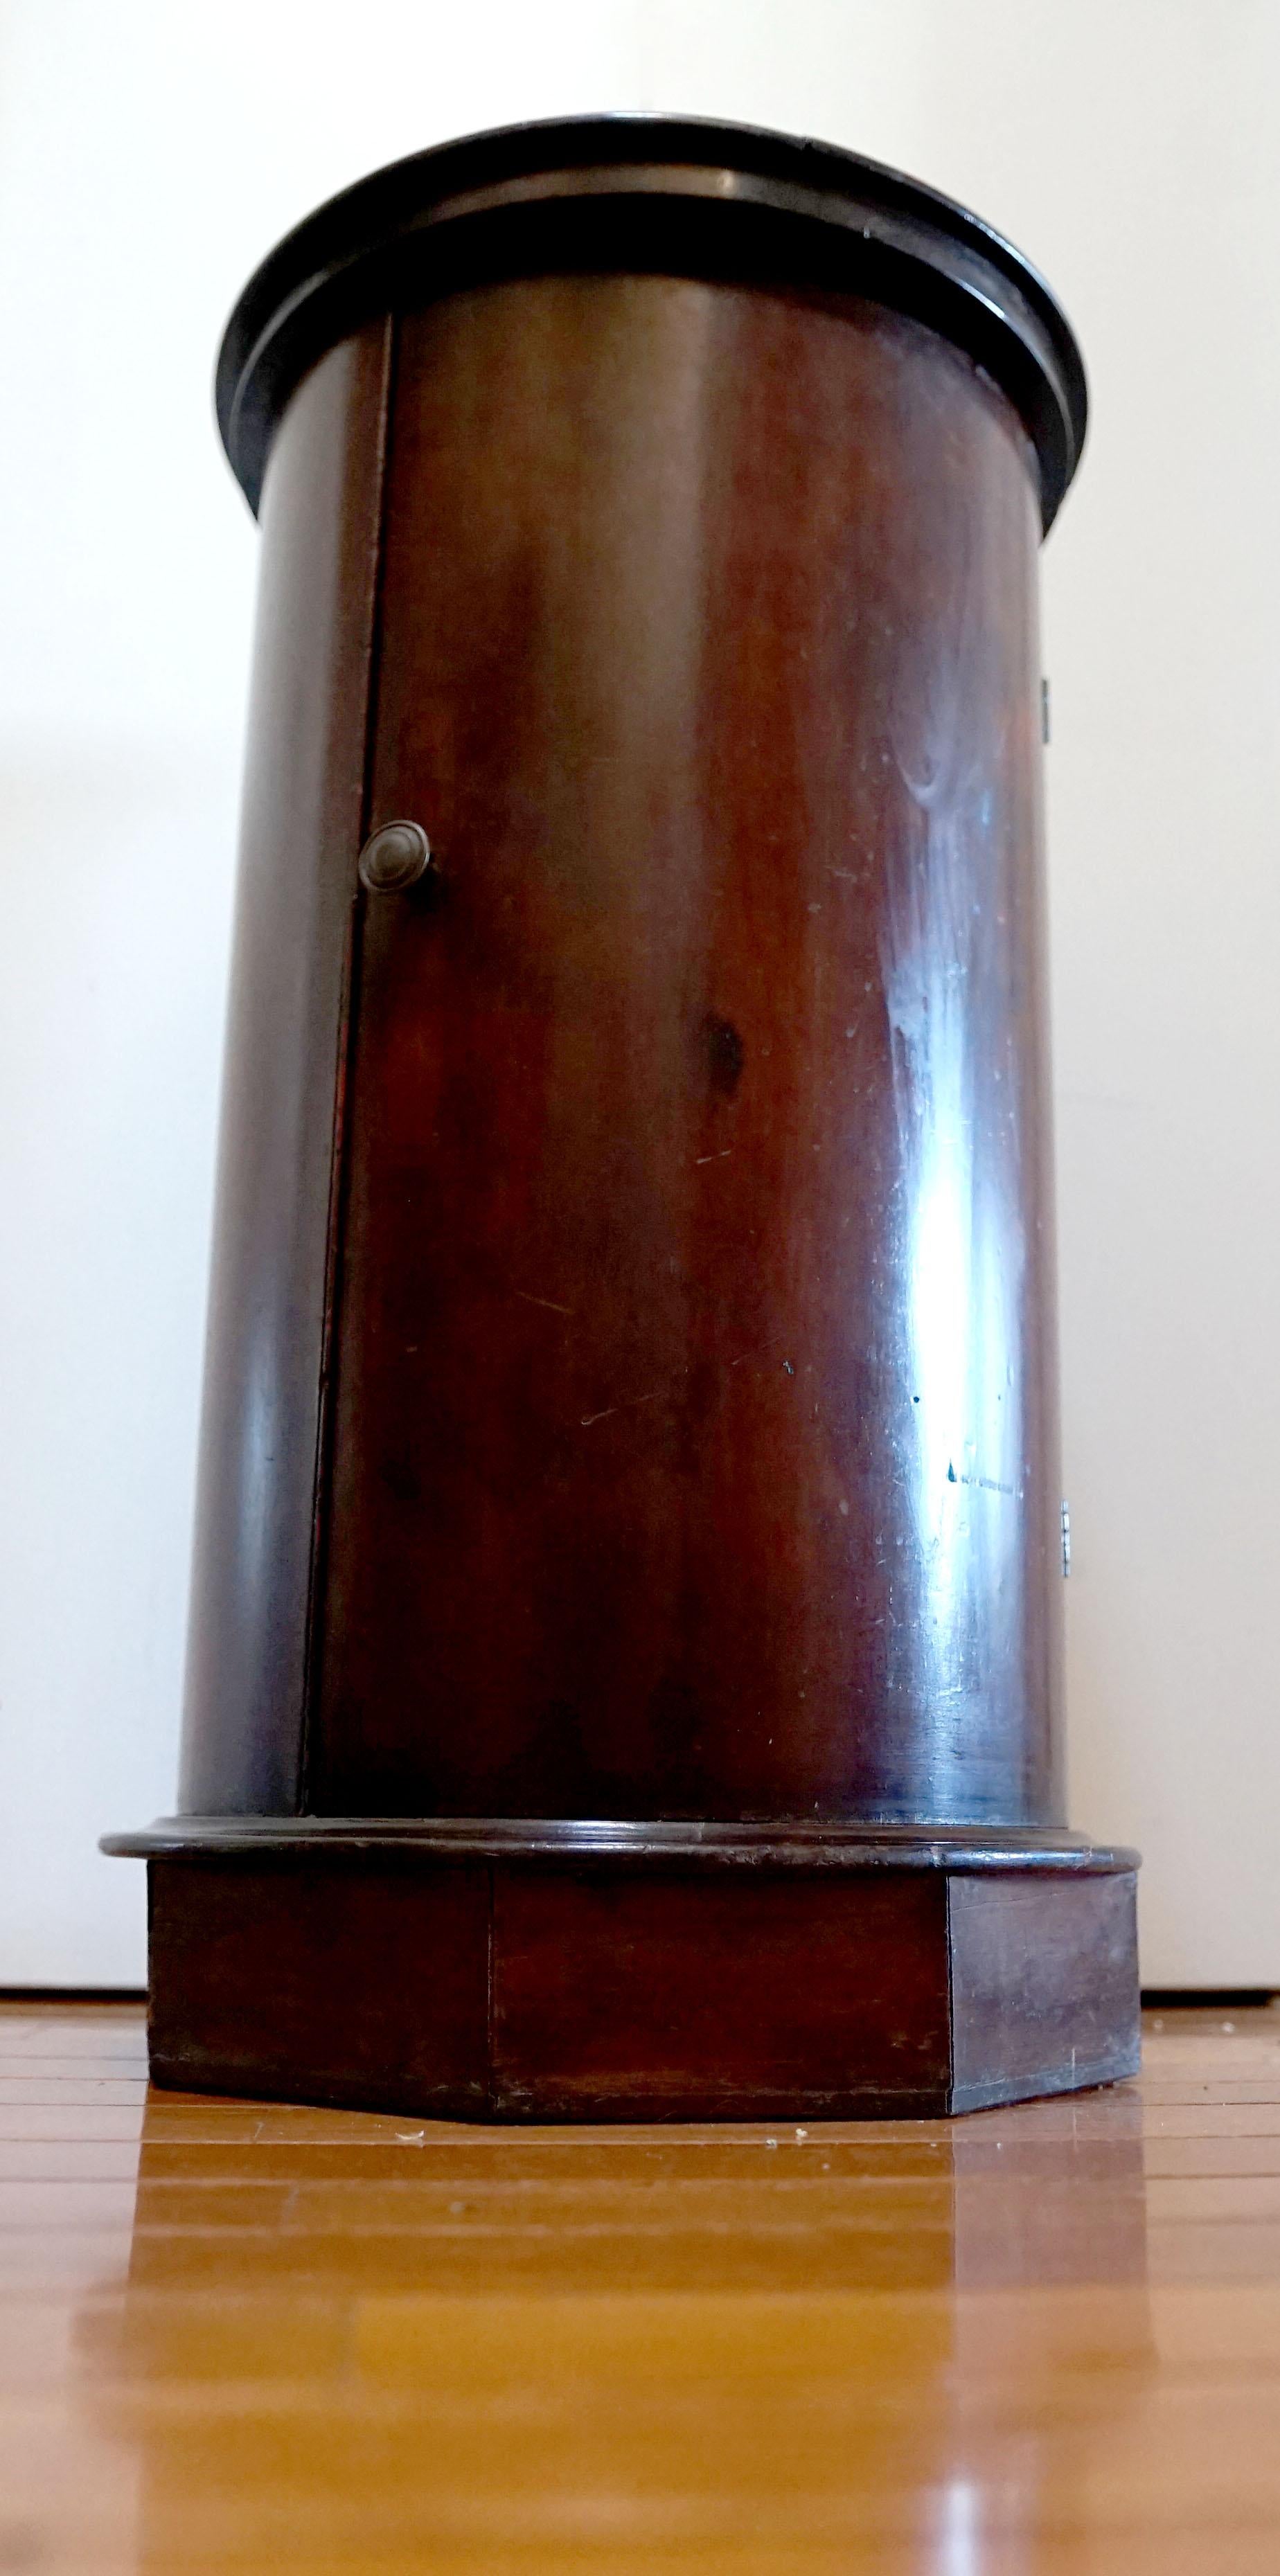 Der zylinderförmige Schrank ist mit weiß und grau geädertem Marmor verkleidet. Der Regency-Mahagonischrank wurde im zweiten Viertel des 19. Jahrhunderts in England hergestellt. 
Der kreisförmig geformte Rand umschließt eine Platte aus weißem